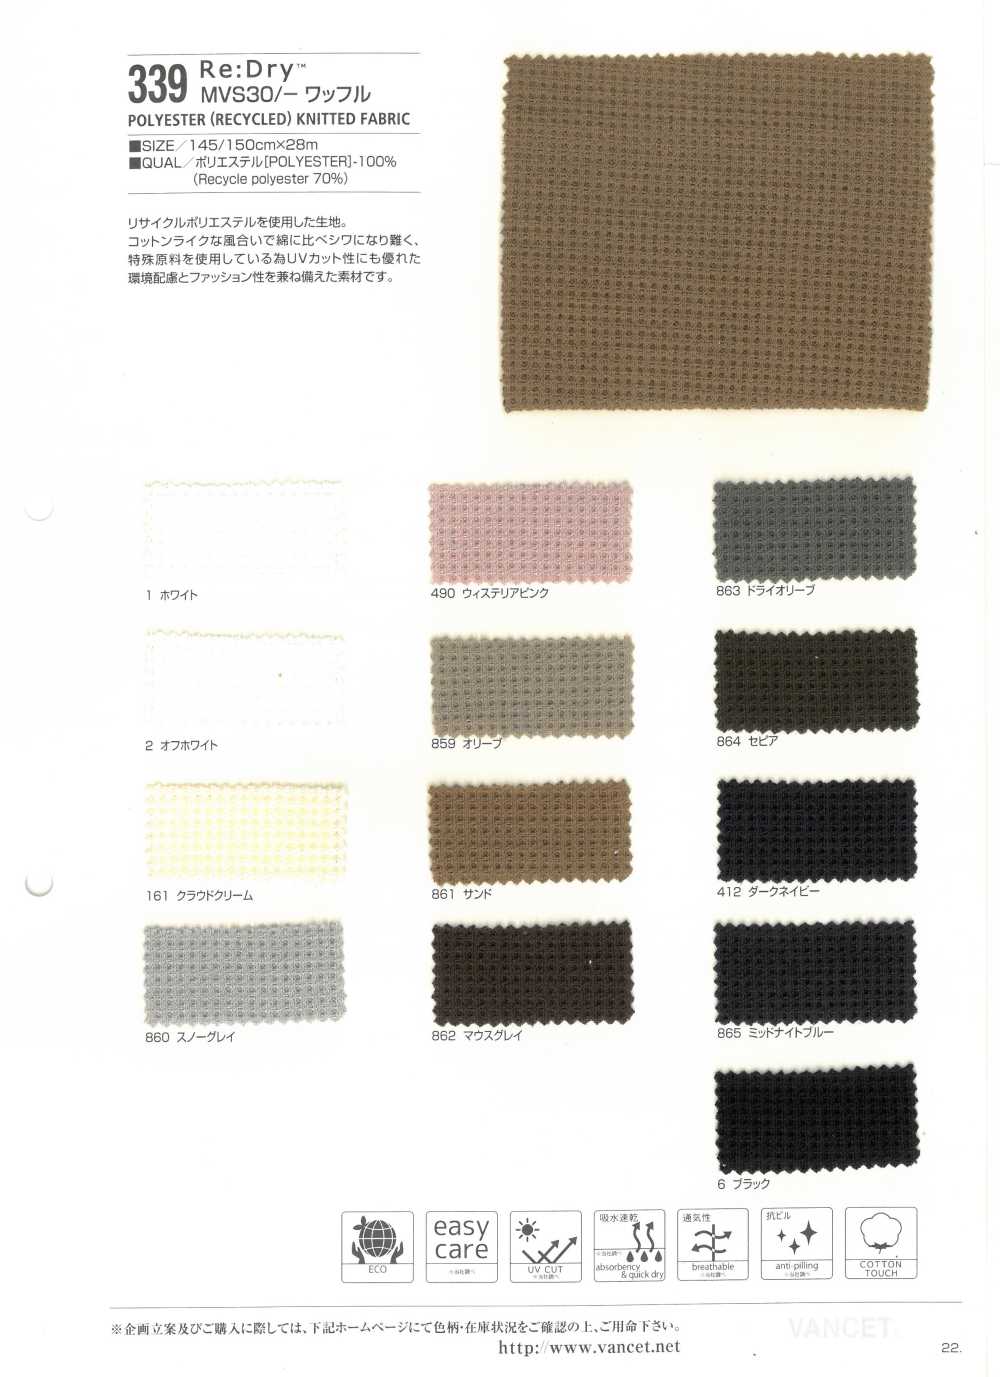 339 Objet : Dry (TM) MVS 30 / Tricot Gaufré[Fabrication De Textile] VANCET